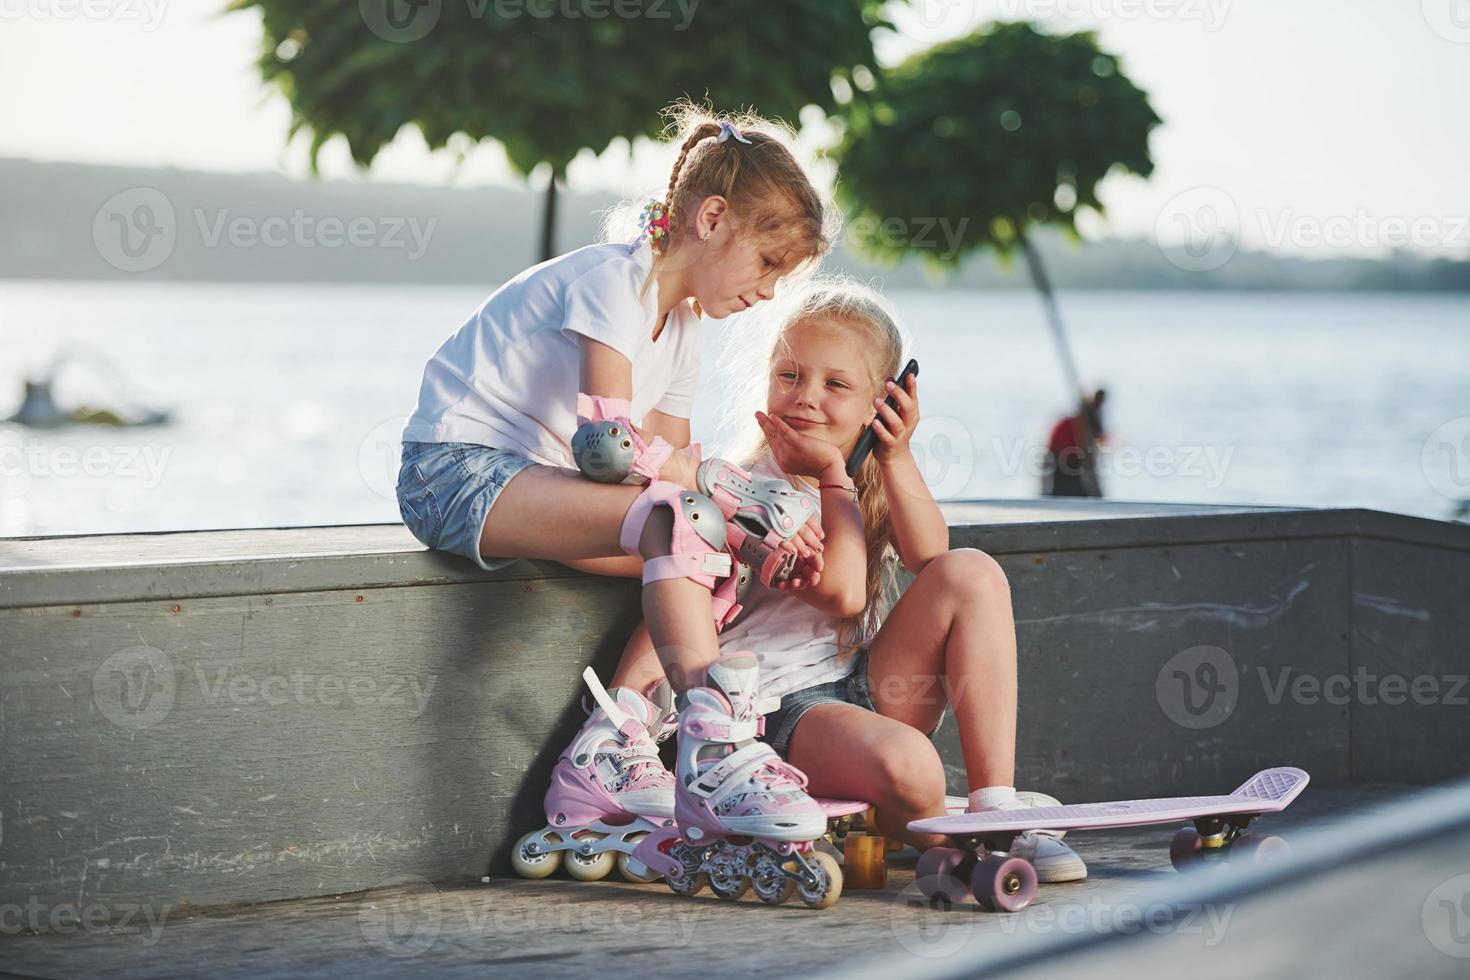 hablando unos con otros. en la rampa para los deportes extremos. dos niñas pequeñas con patines al aire libre se divierten foto